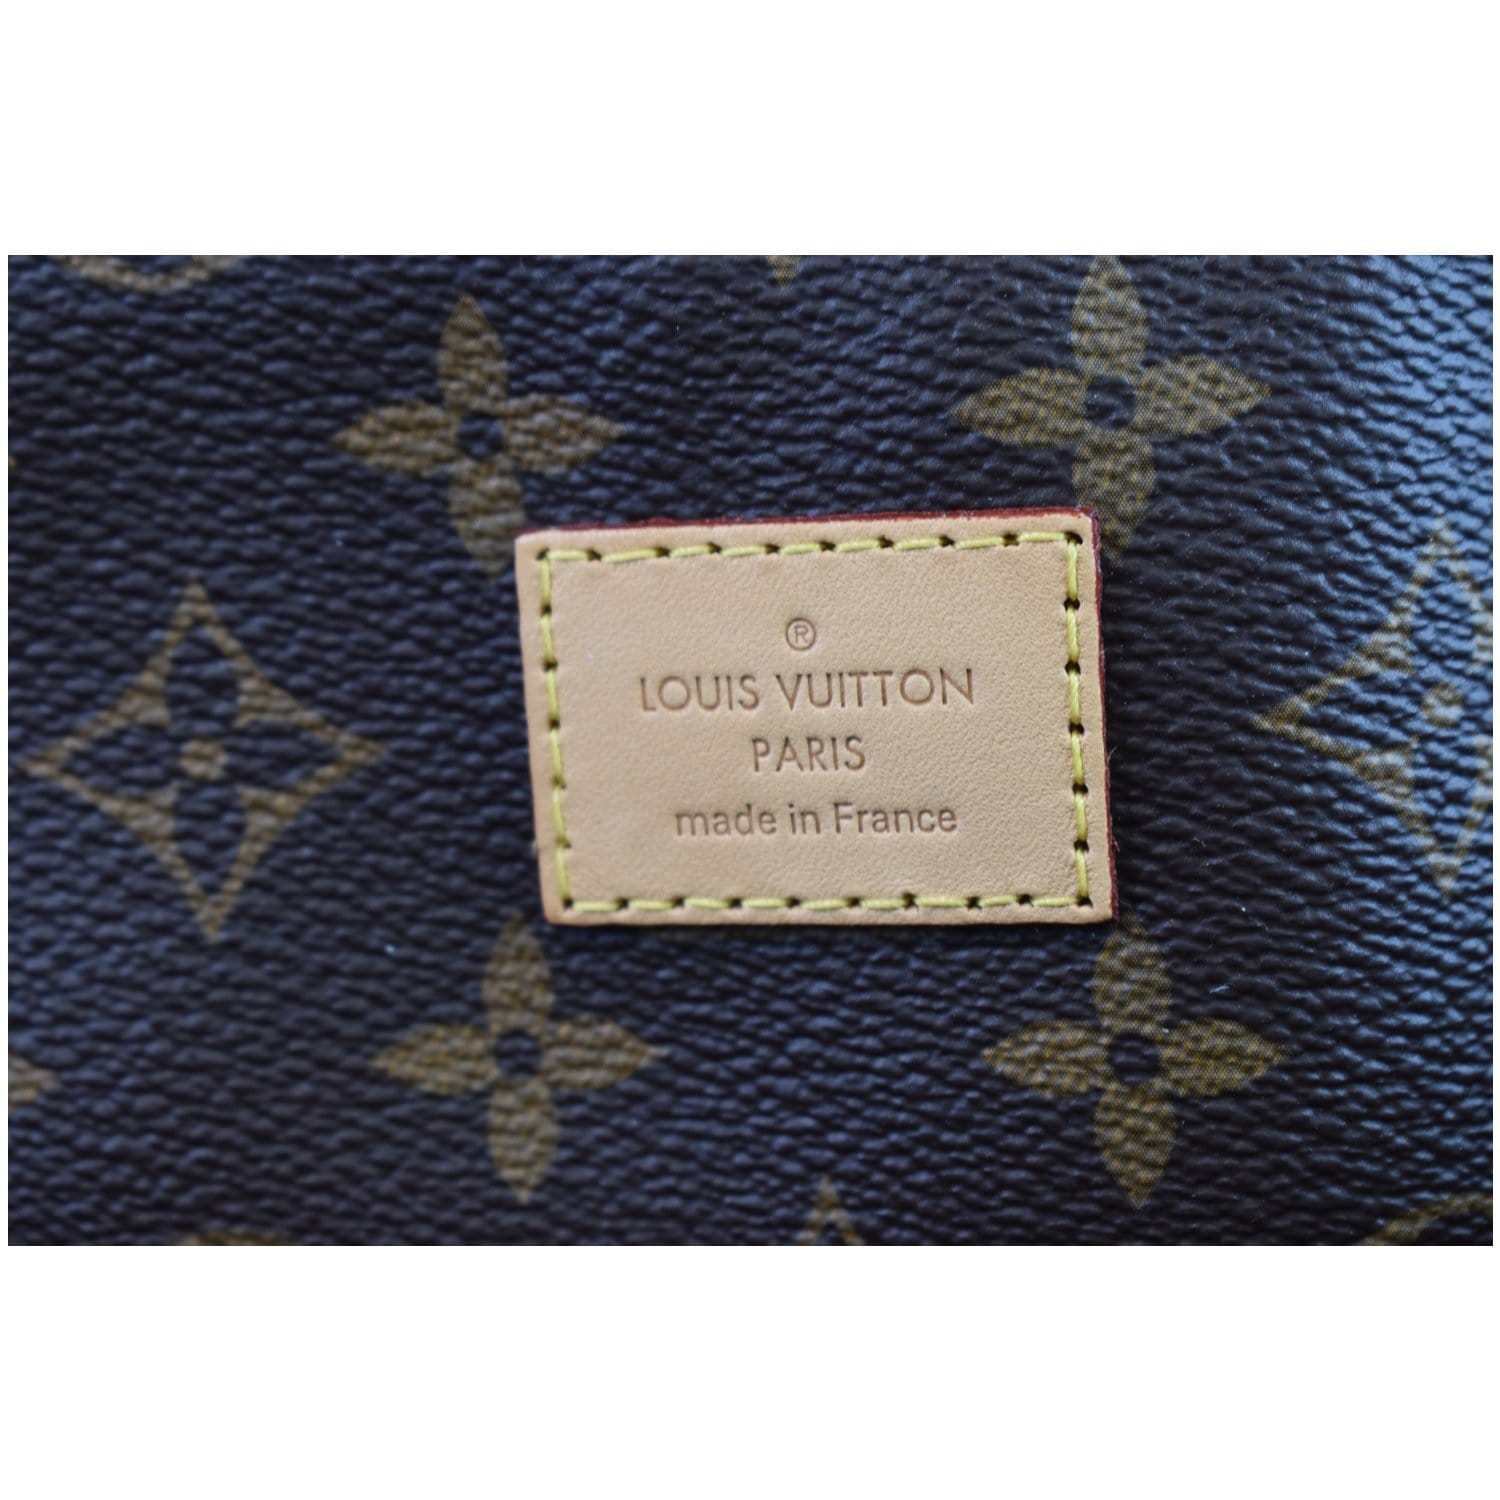 Louis Vuitton Melie hobo 1495.00 ❌sold❌please DM